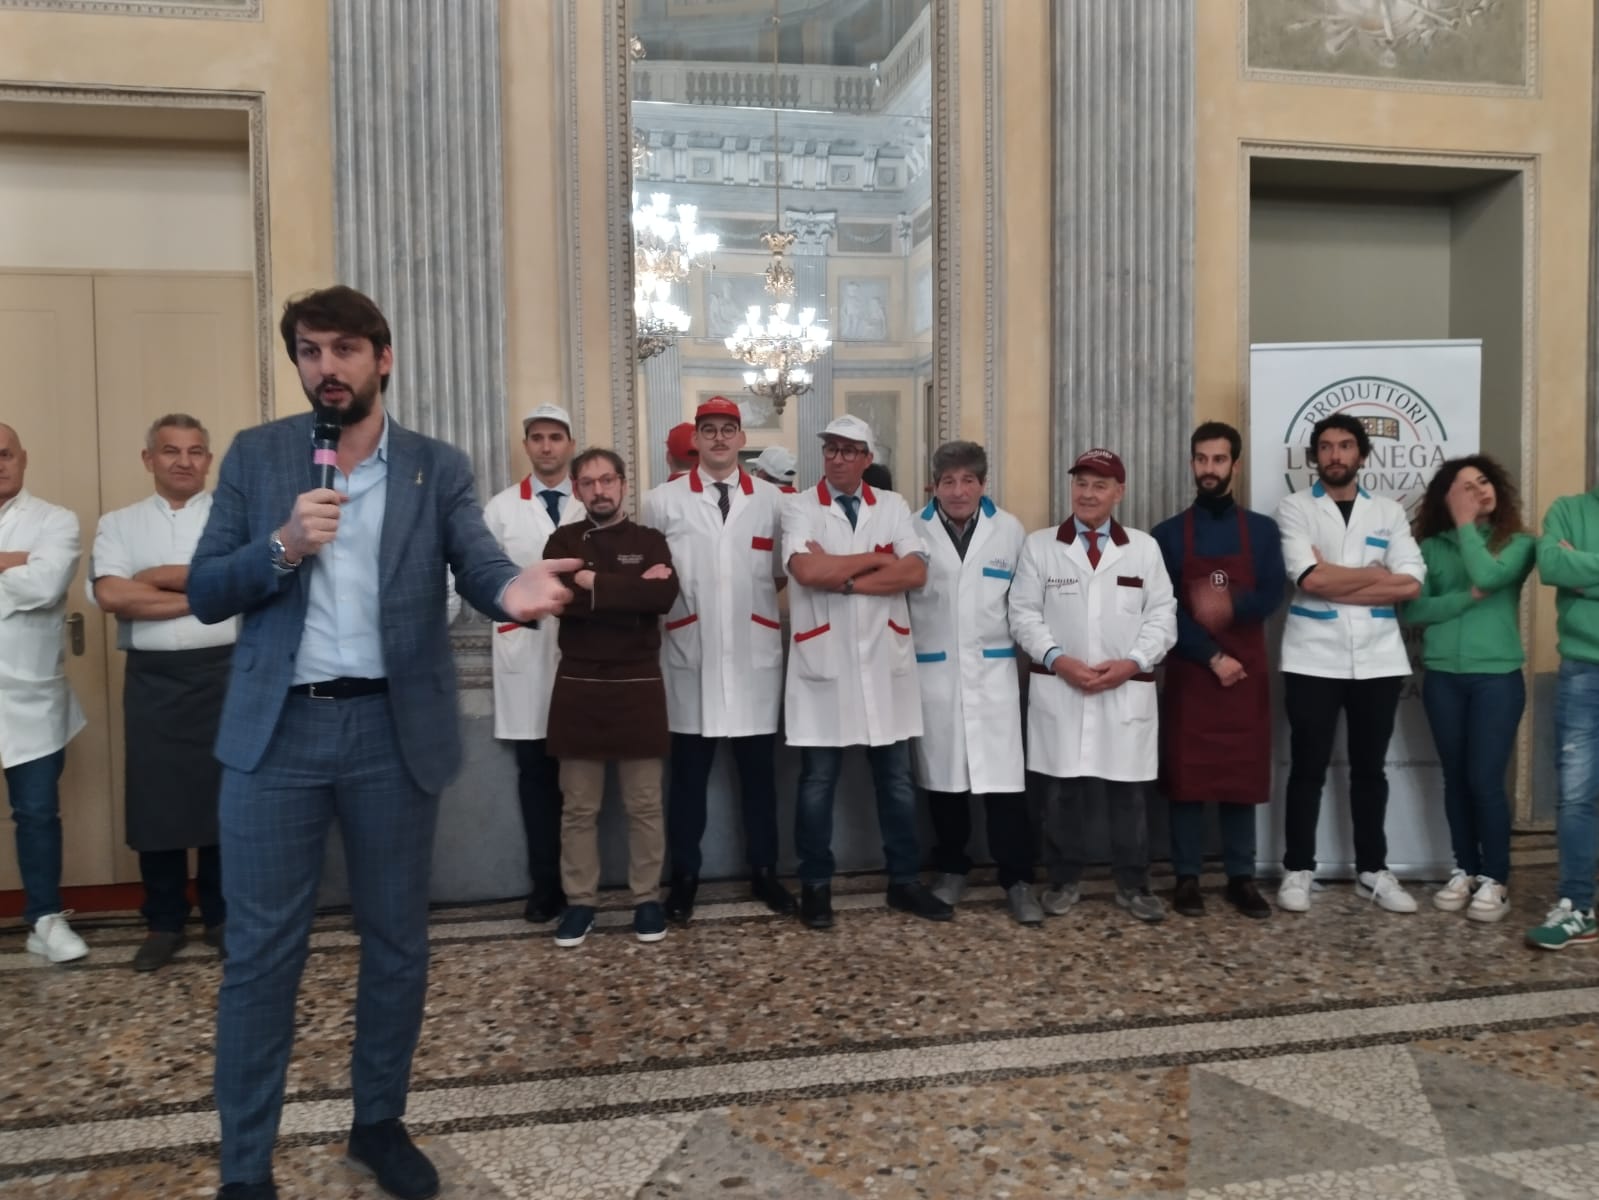 Monza Villa reale presentazione associazione produttori luganega di Monza consigliere regionale Alessandro Corbetta